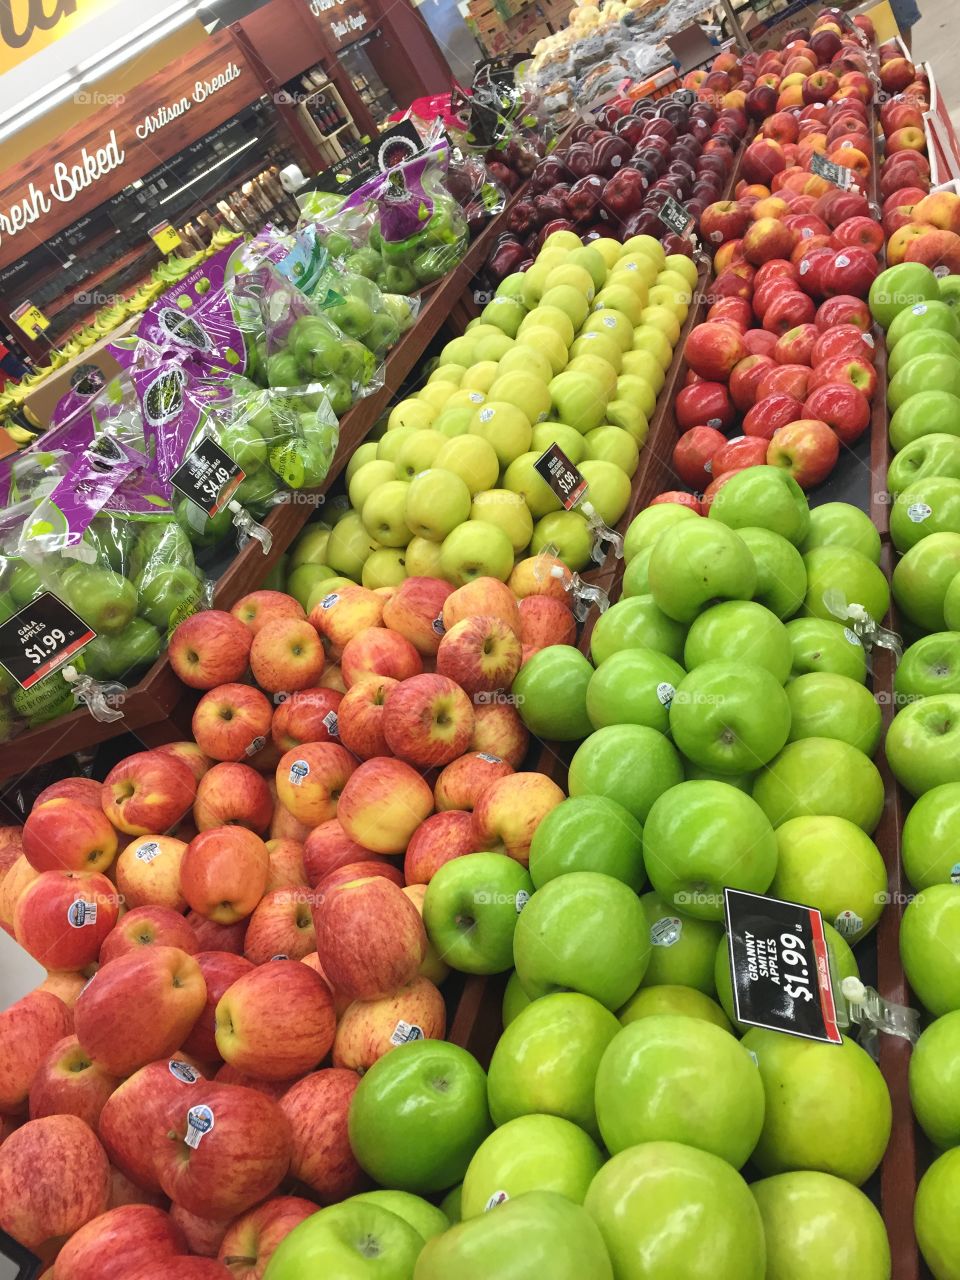 Apples on display